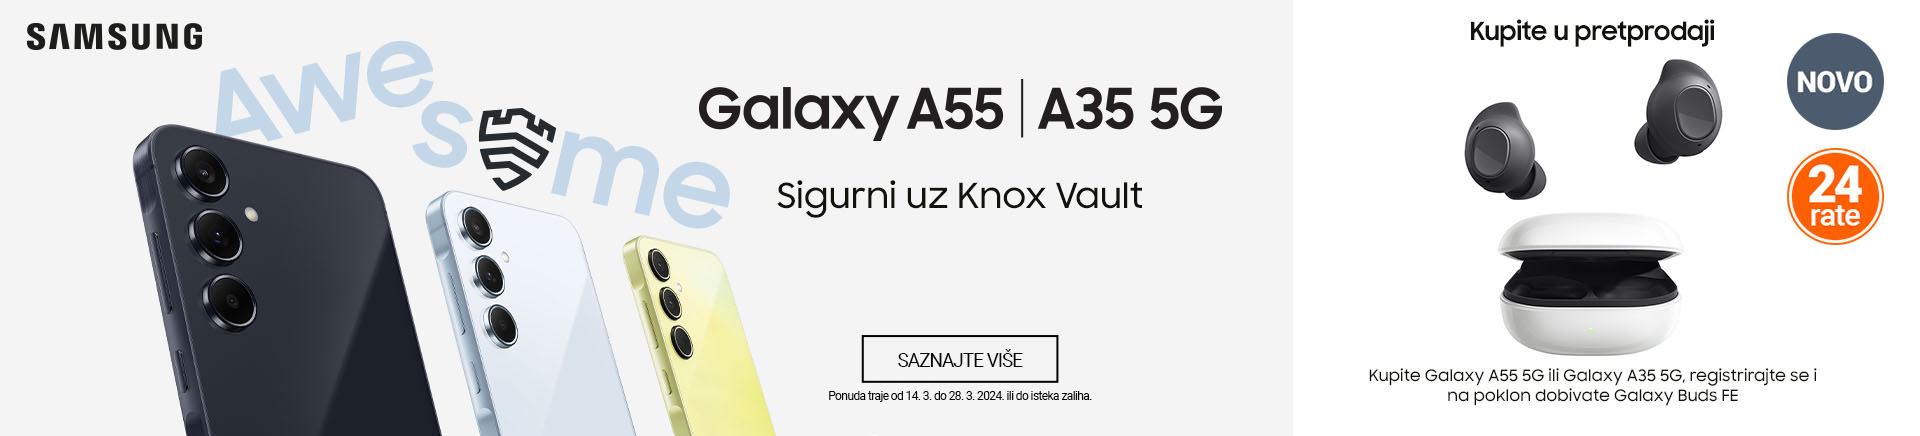 HR~Samsung Galaxy A35 i A55 MOBILE 760x872.jpg